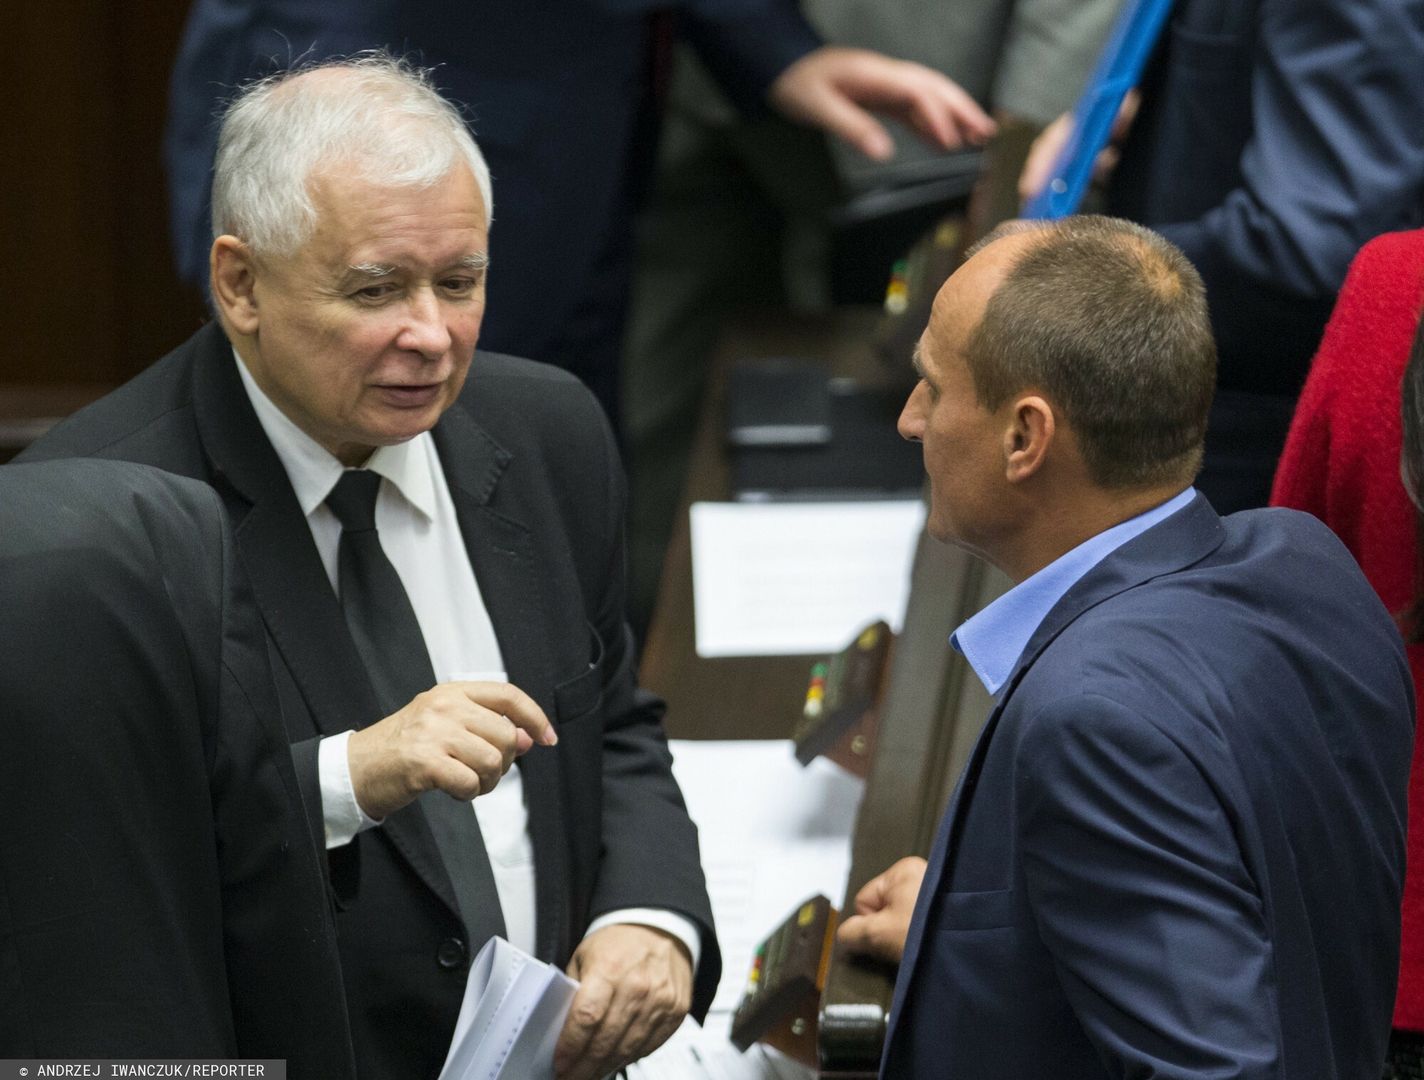 Kukiz dogadał się z Kaczyńskim? Prezes "inwestował w ich znajomość"